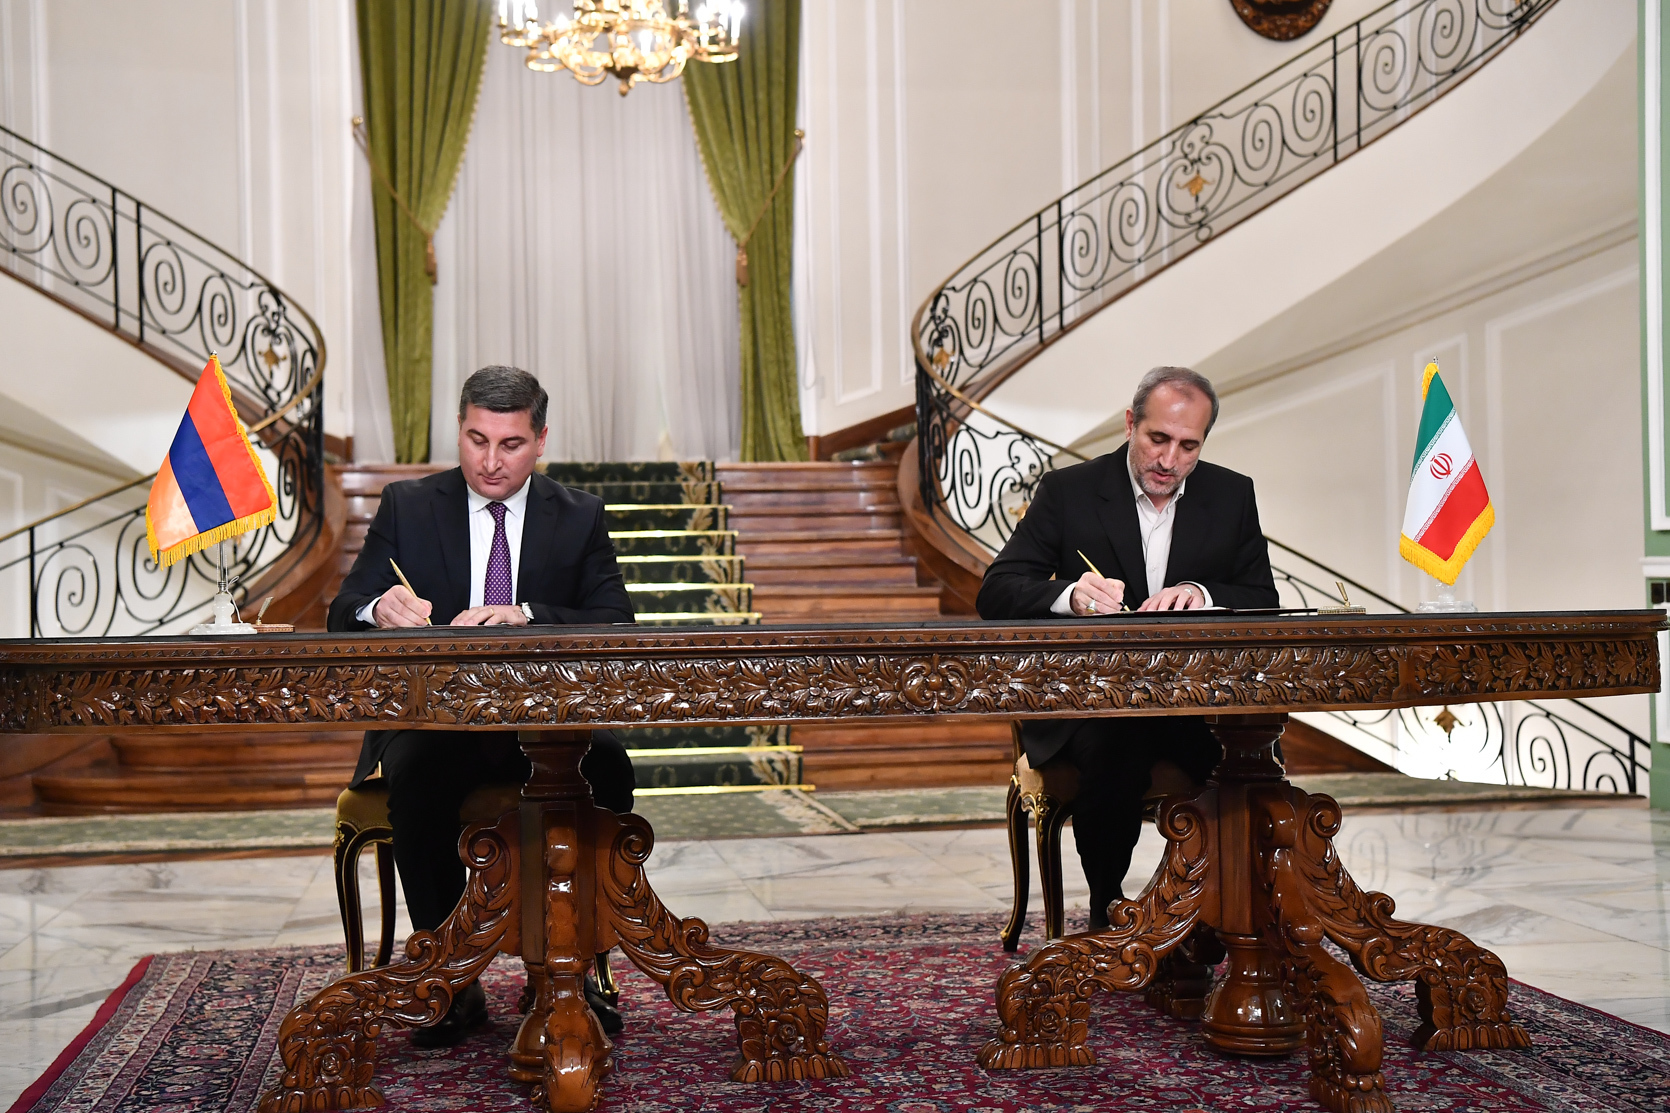 Ստորագրվել է բնական գազի ոլորտում Իրան-Հայաստան համագործակցության մասին փոխըմբռնման հուշագիր